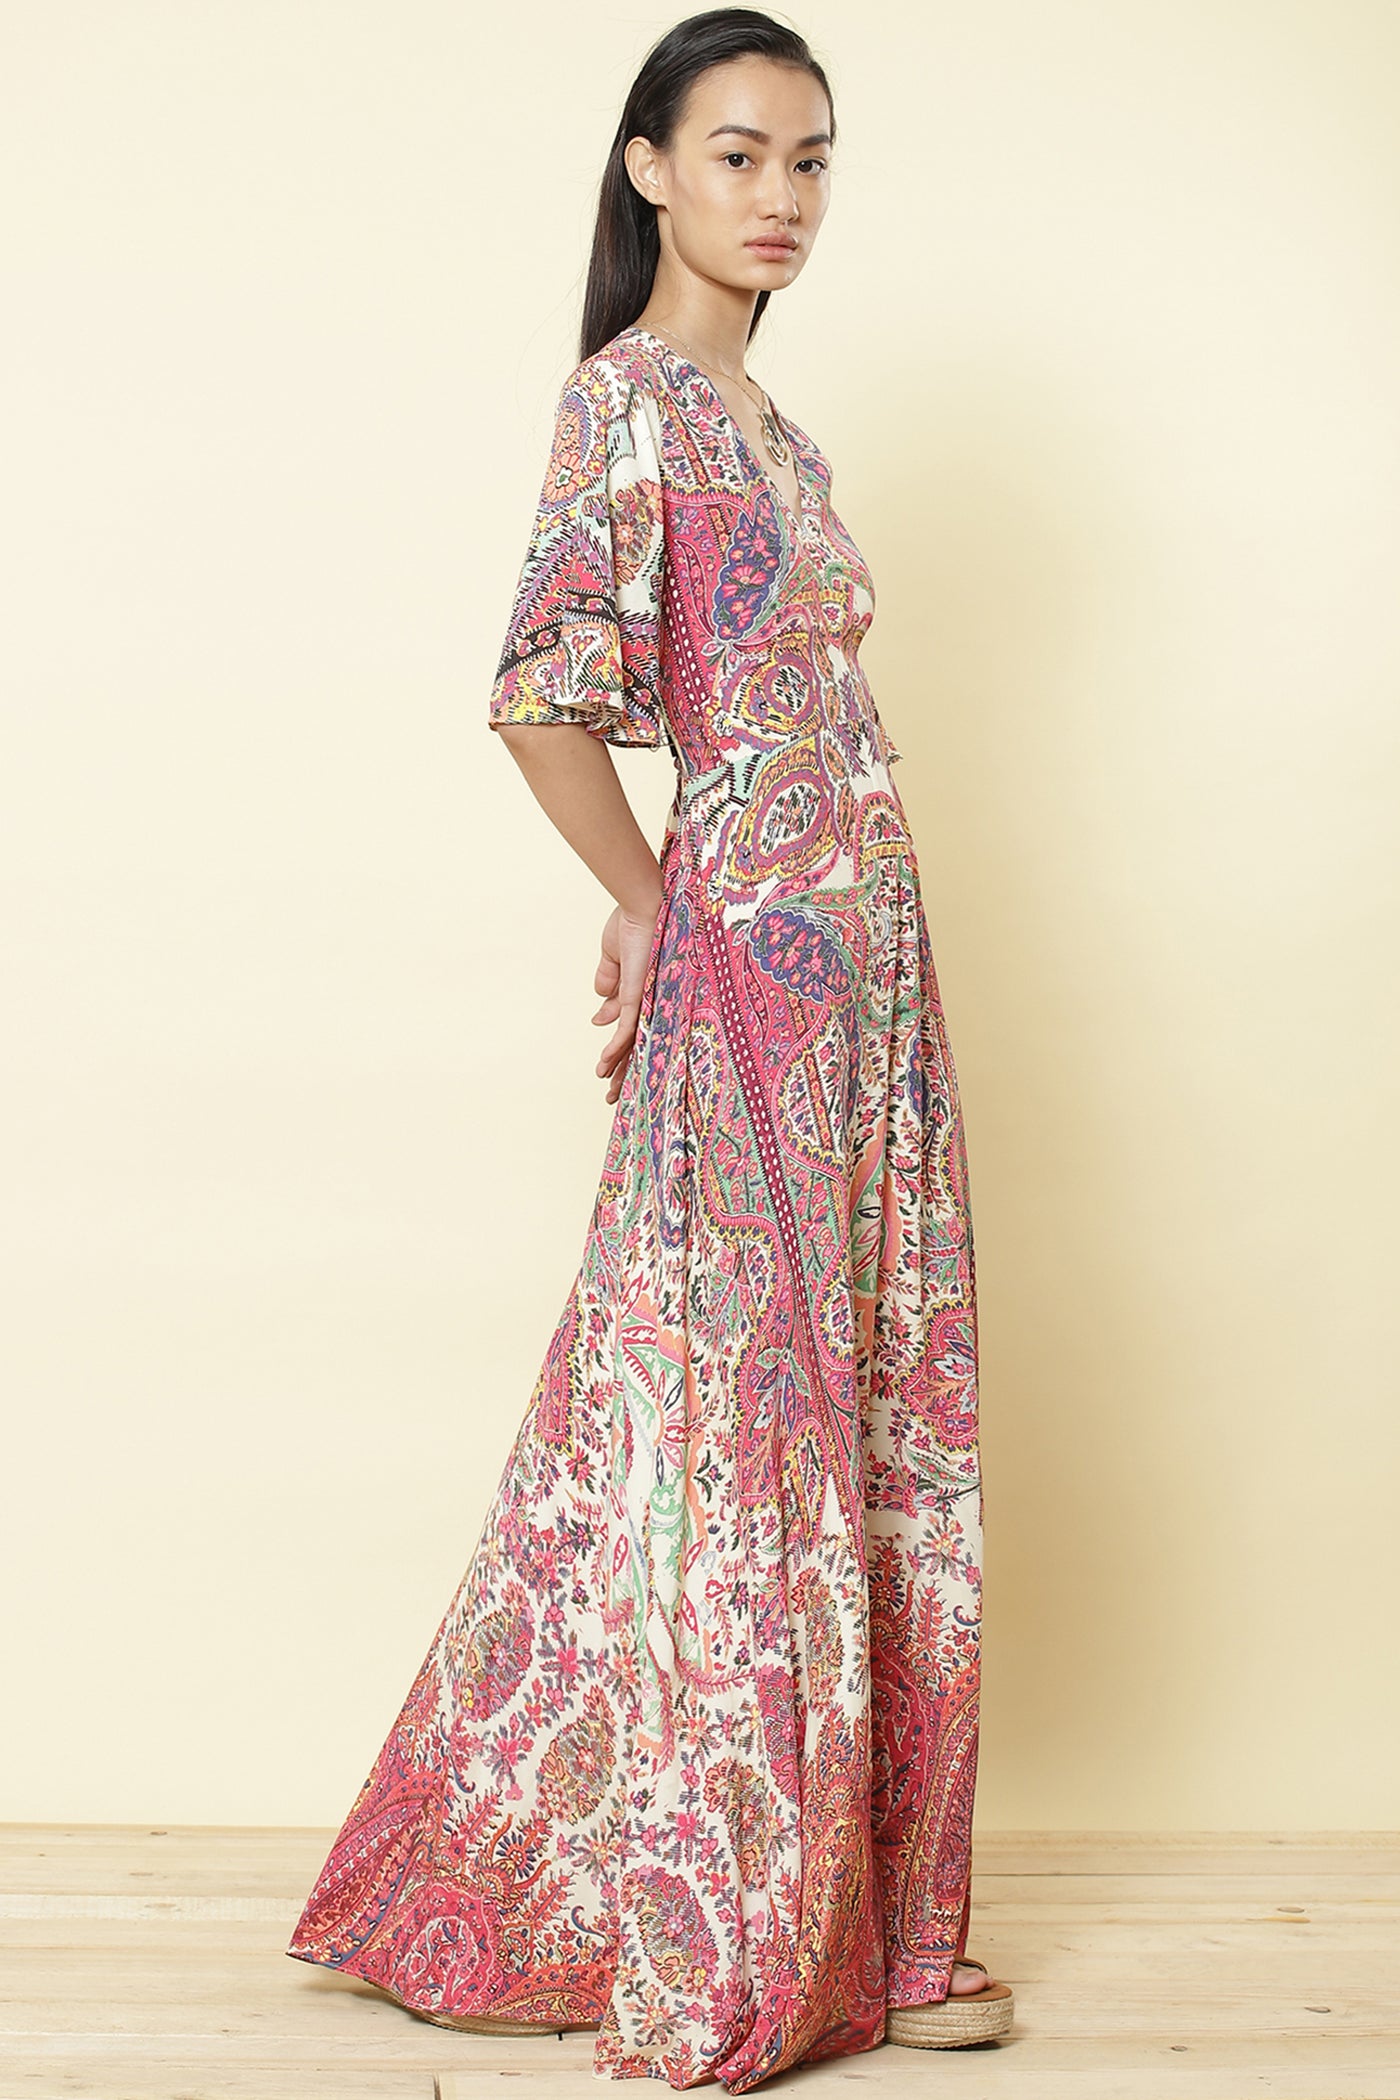 label ritu kumar Half Sleeves Printed Long Dress pink online shopping melange singapore indian designer wear